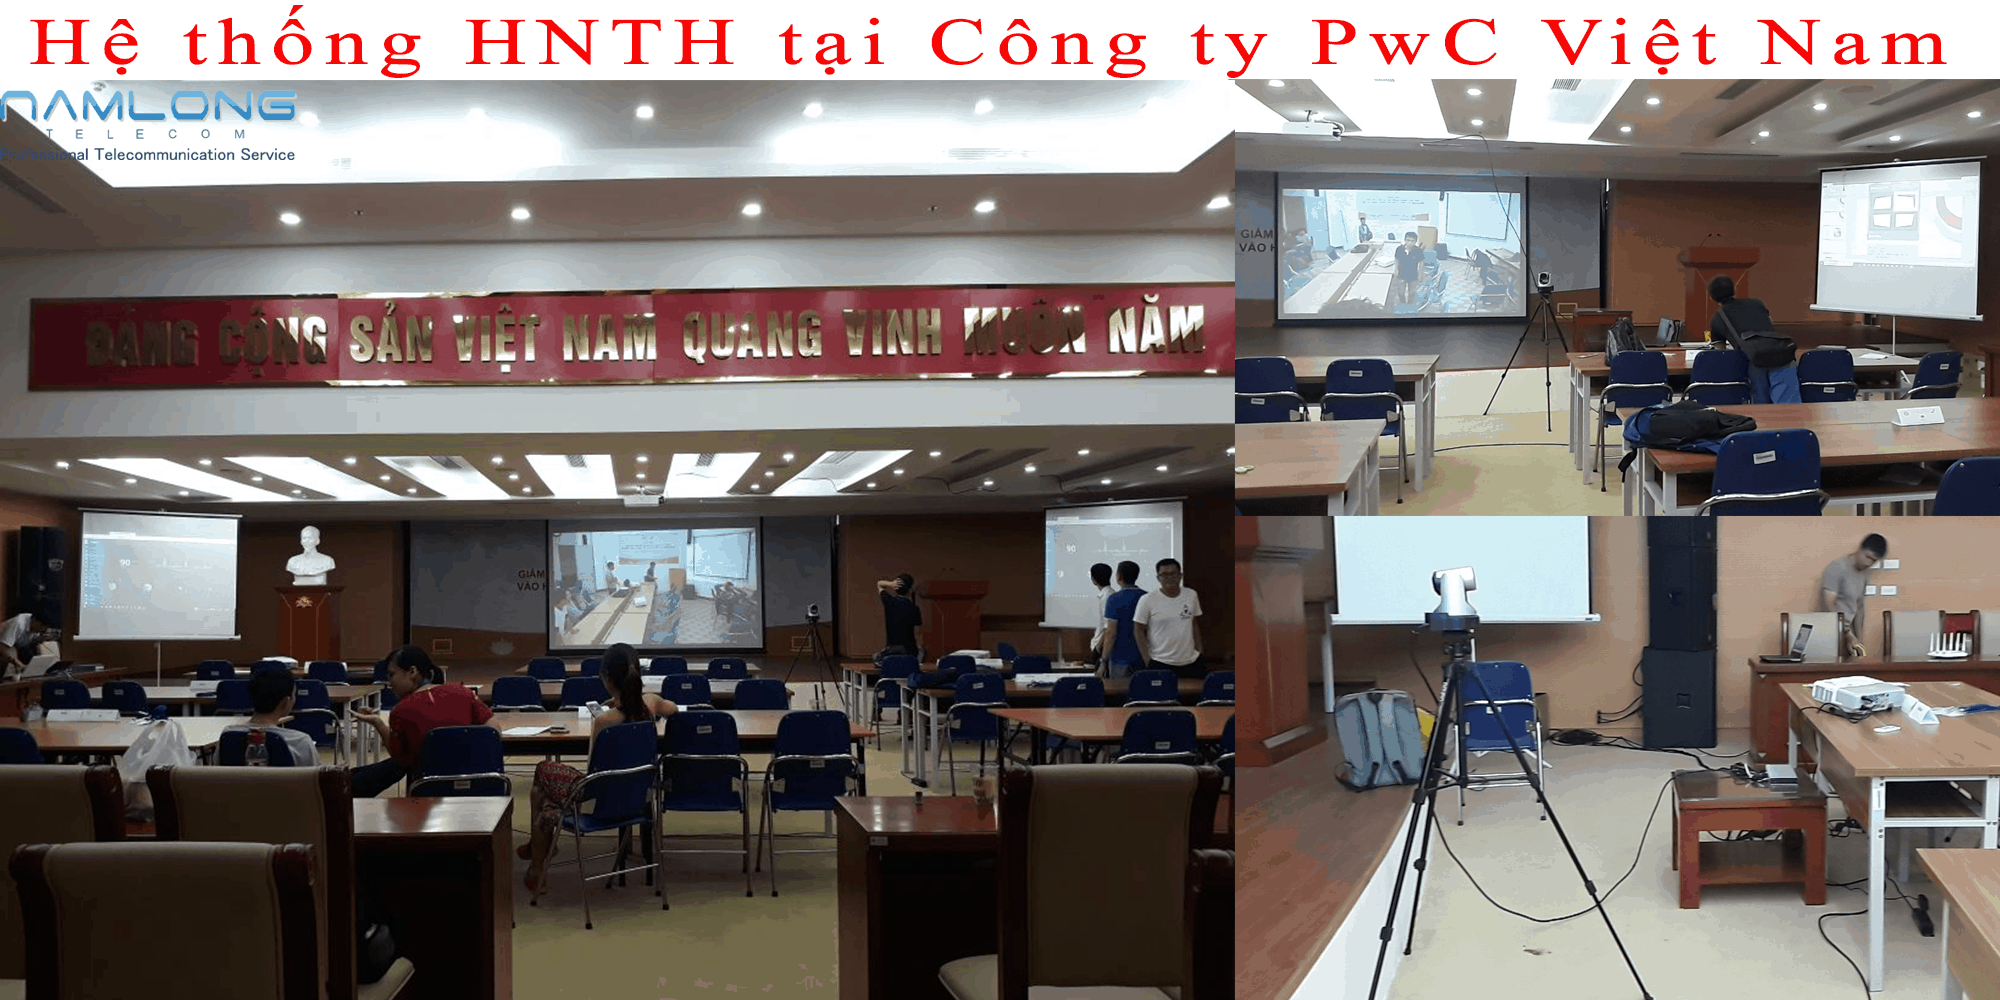 Truyền hình hội nghị hệ thống tại công ty PWC Việt Nam